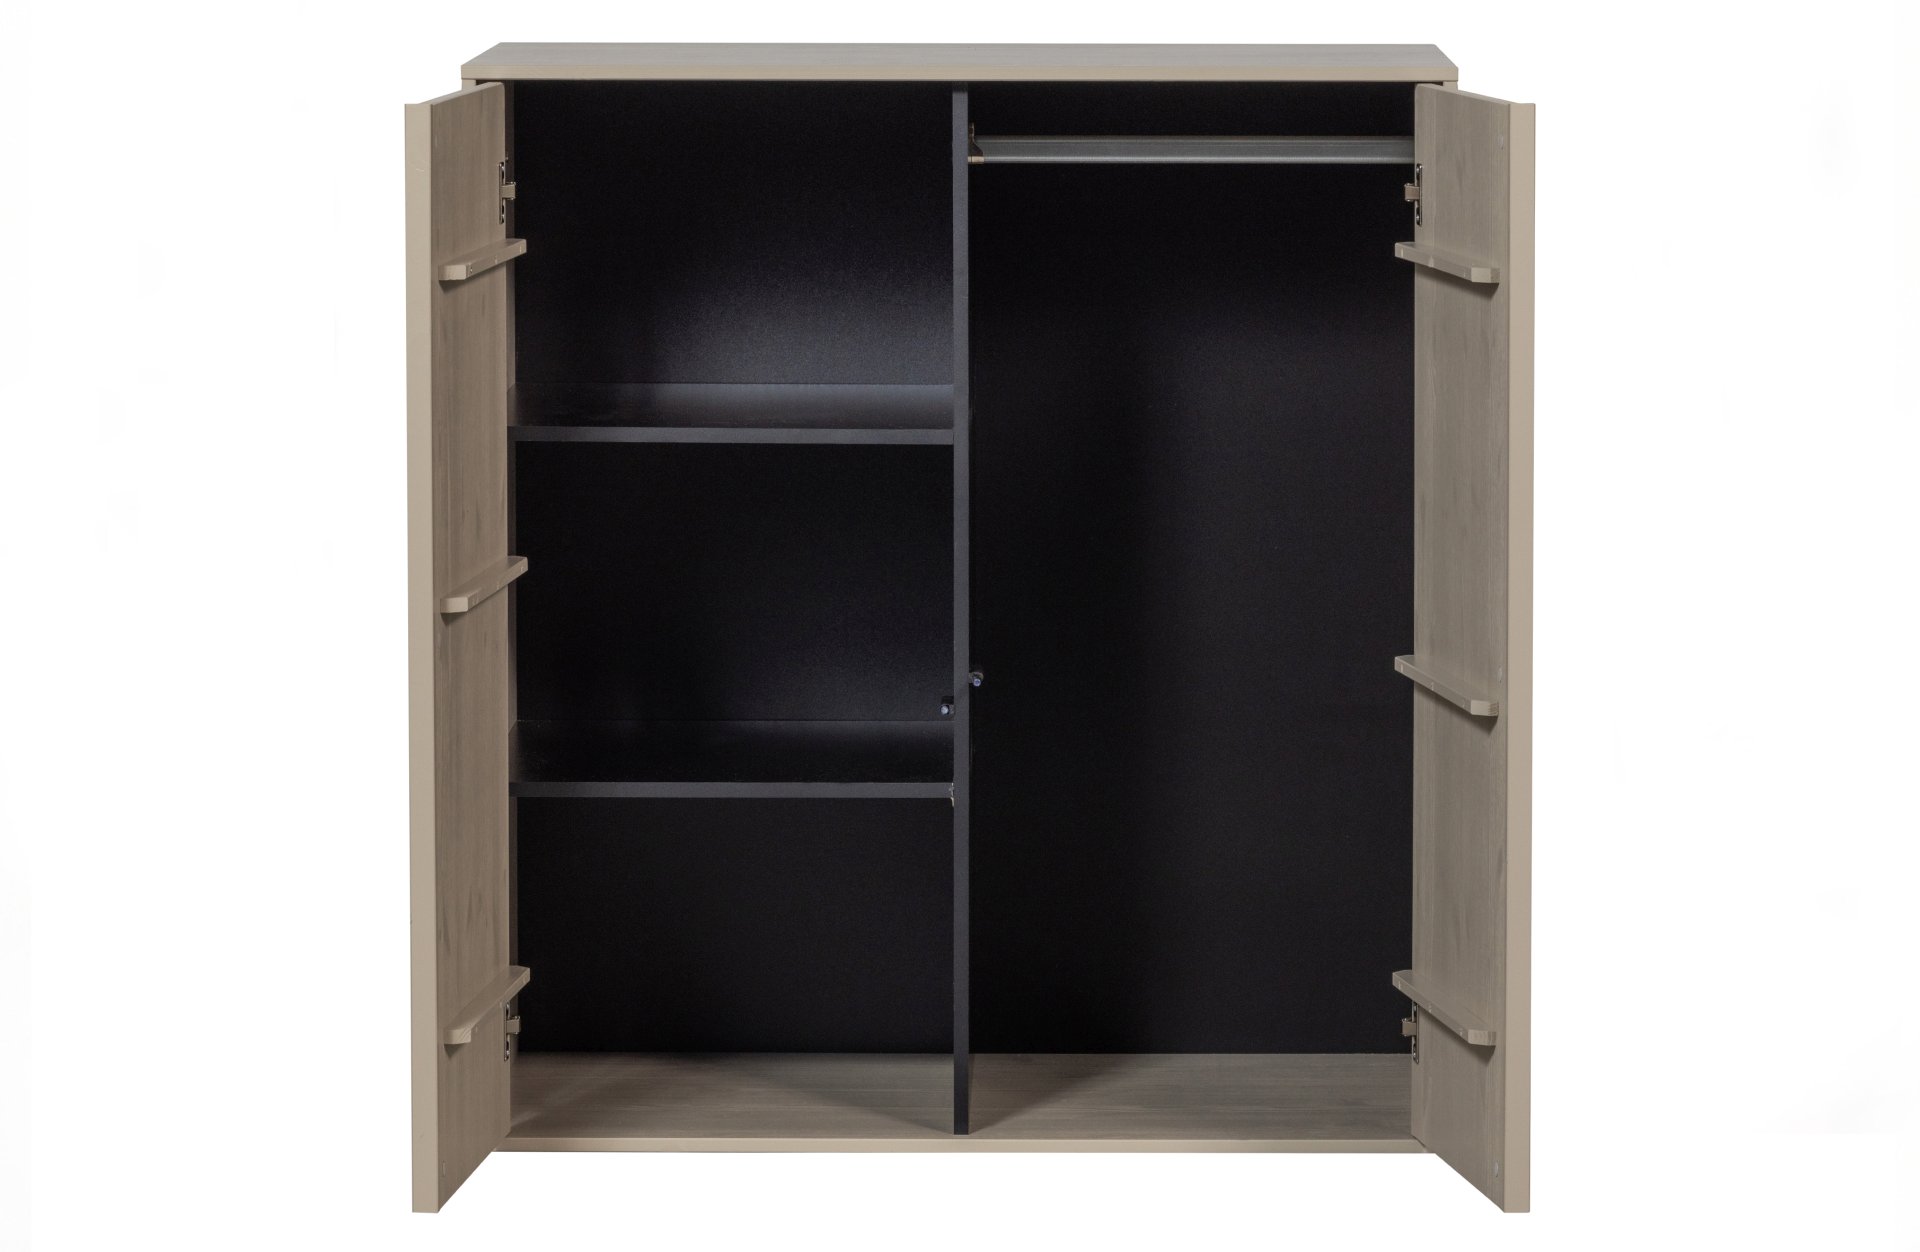 Der Modulschrank Daily Closet überzeugt mit seinem modernen Design. Gefertigt wurde er aus Kiefernholz, welches einen grauen Farbton besitzt. Der Schrank verfügt über zwei Türen und hat eine Größe von 110x100 cm